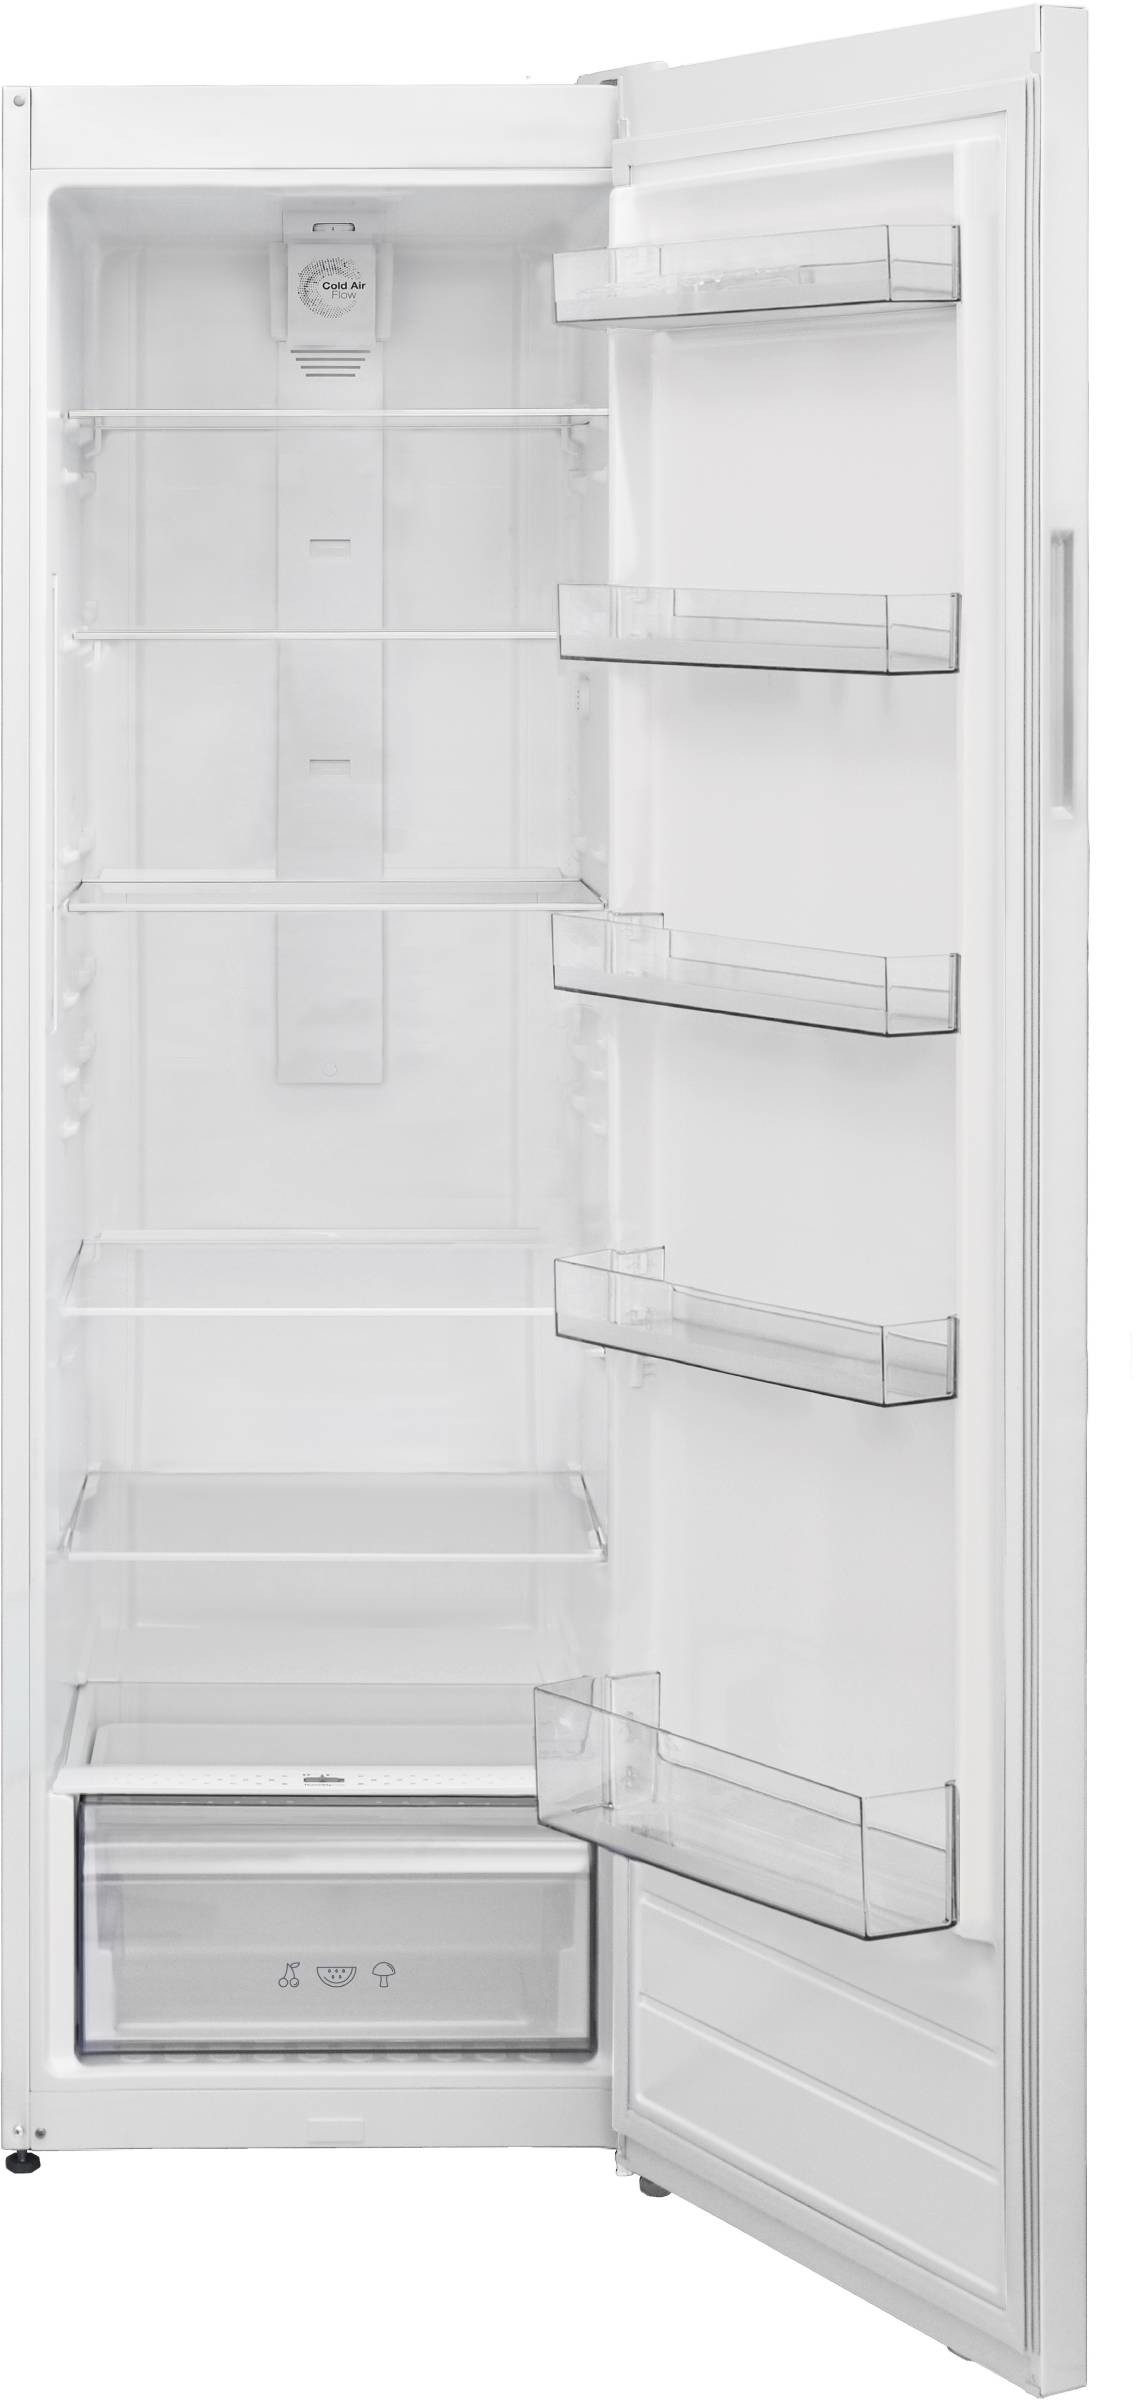 TELEFUNKEN Réfrigérateur 1 porte Froid Brassé 396L Blanc - R1D376FW